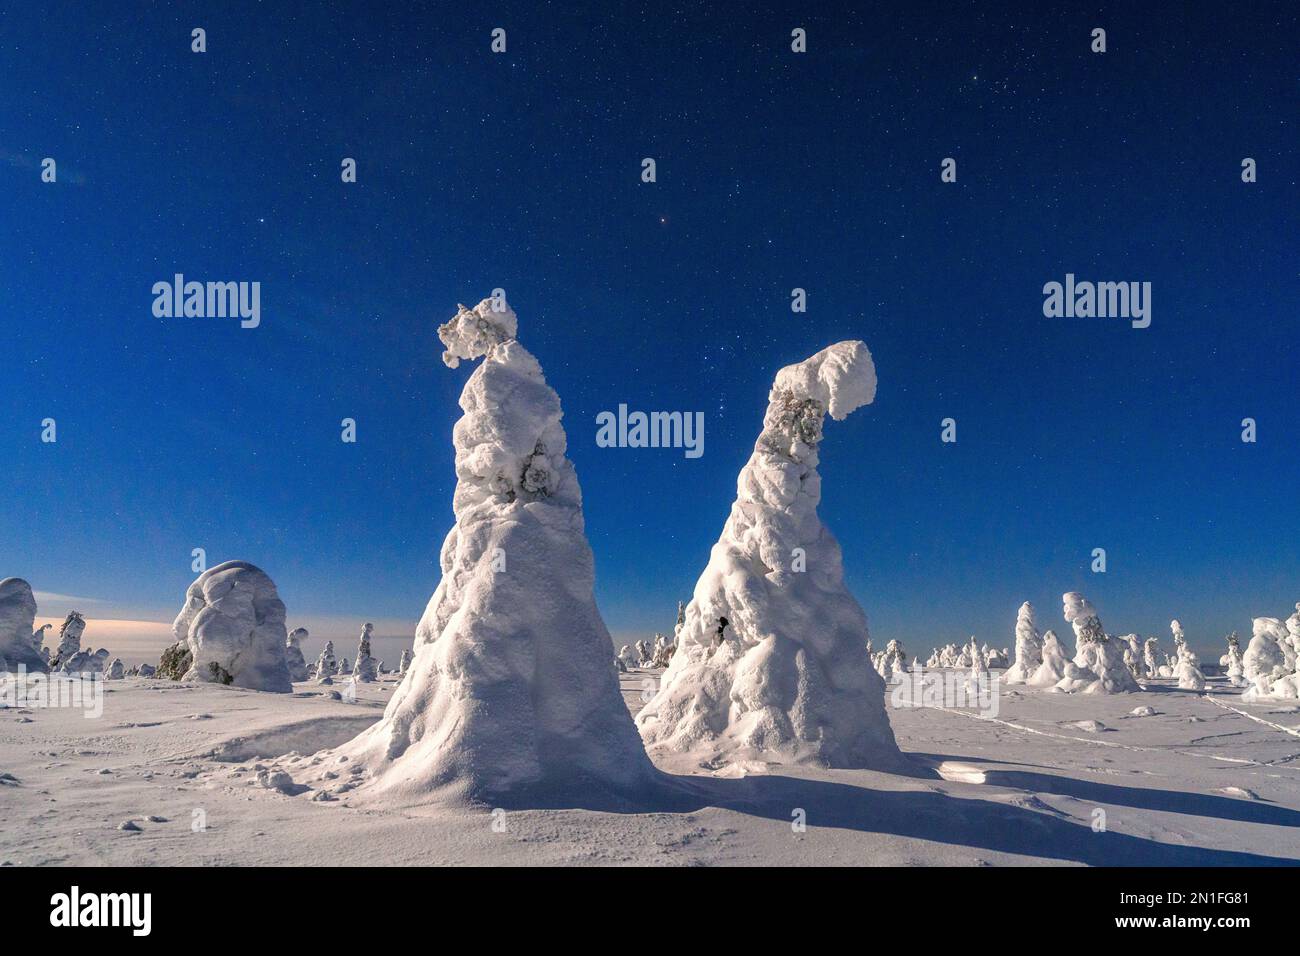 Clair de lune dans le ciel étoilé d'hiver au-dessus d'arbres gelés couverts de neige, Parc national de Riisitunturi, Posio, Laponie, Finlande, Europe Banque D'Images